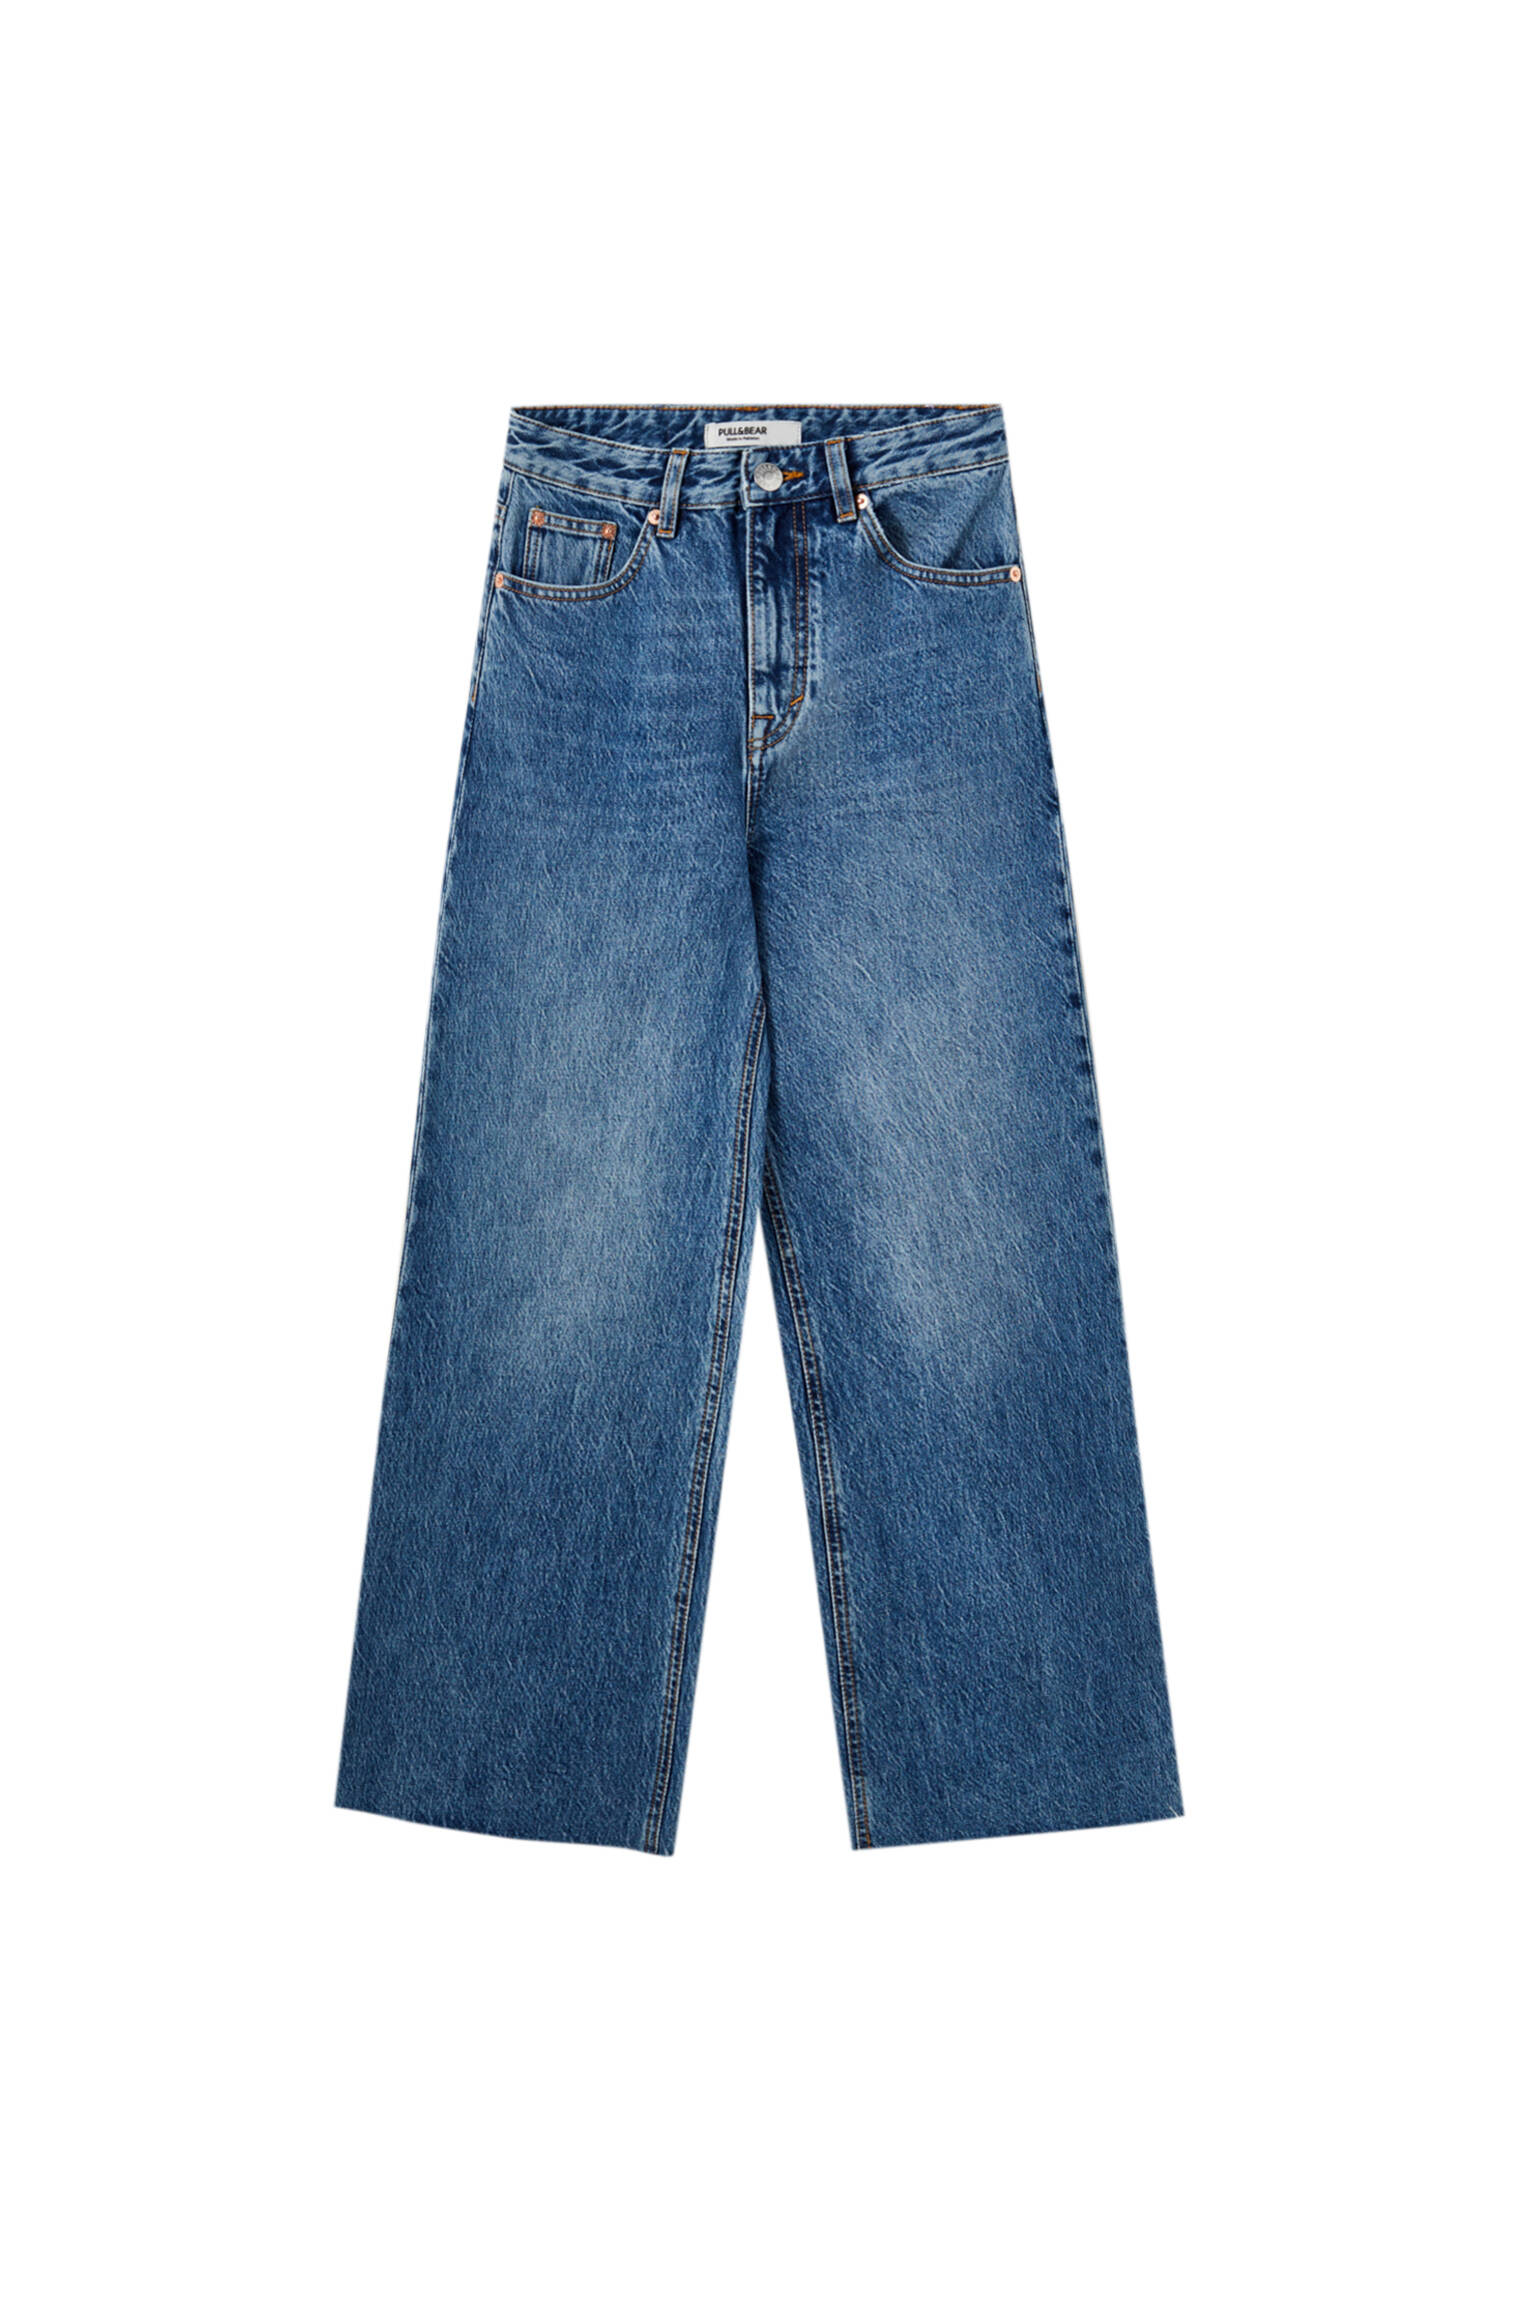 СИНИЙ Базовые джинсы-кюлоты Pull & Bear